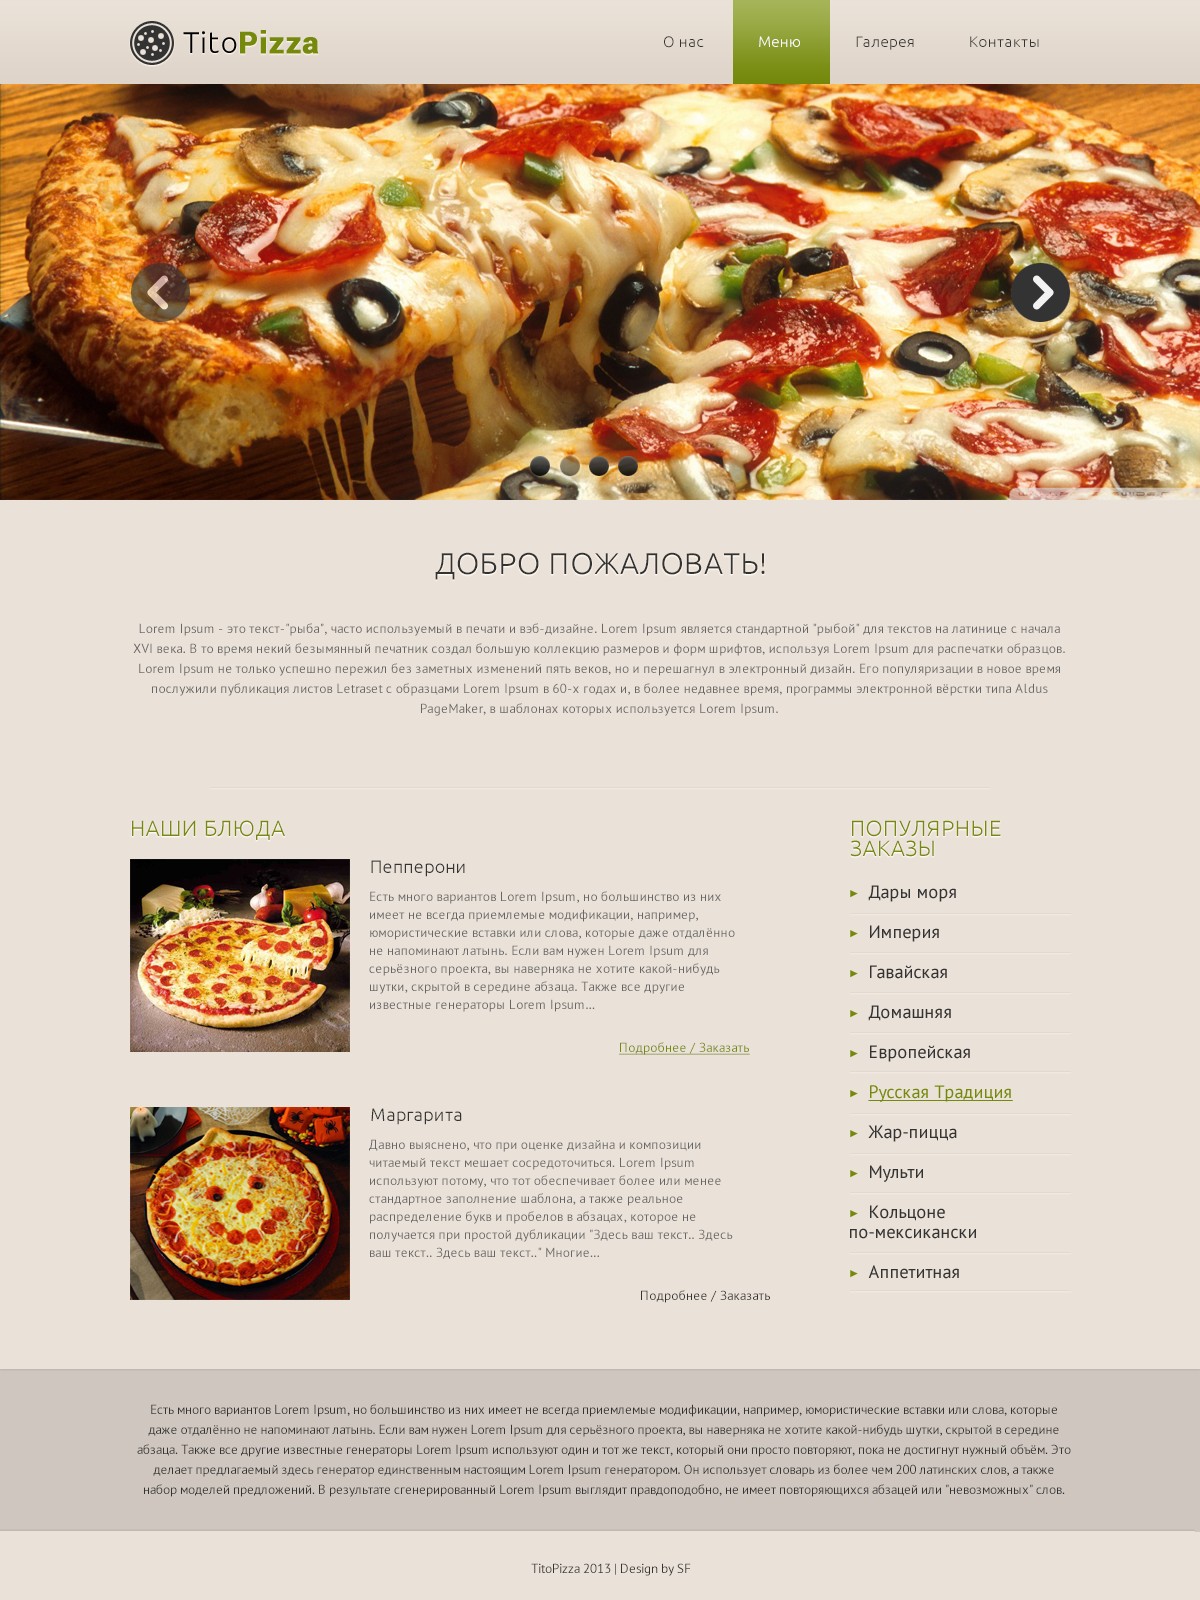 Дизайн для сайта пиццерии